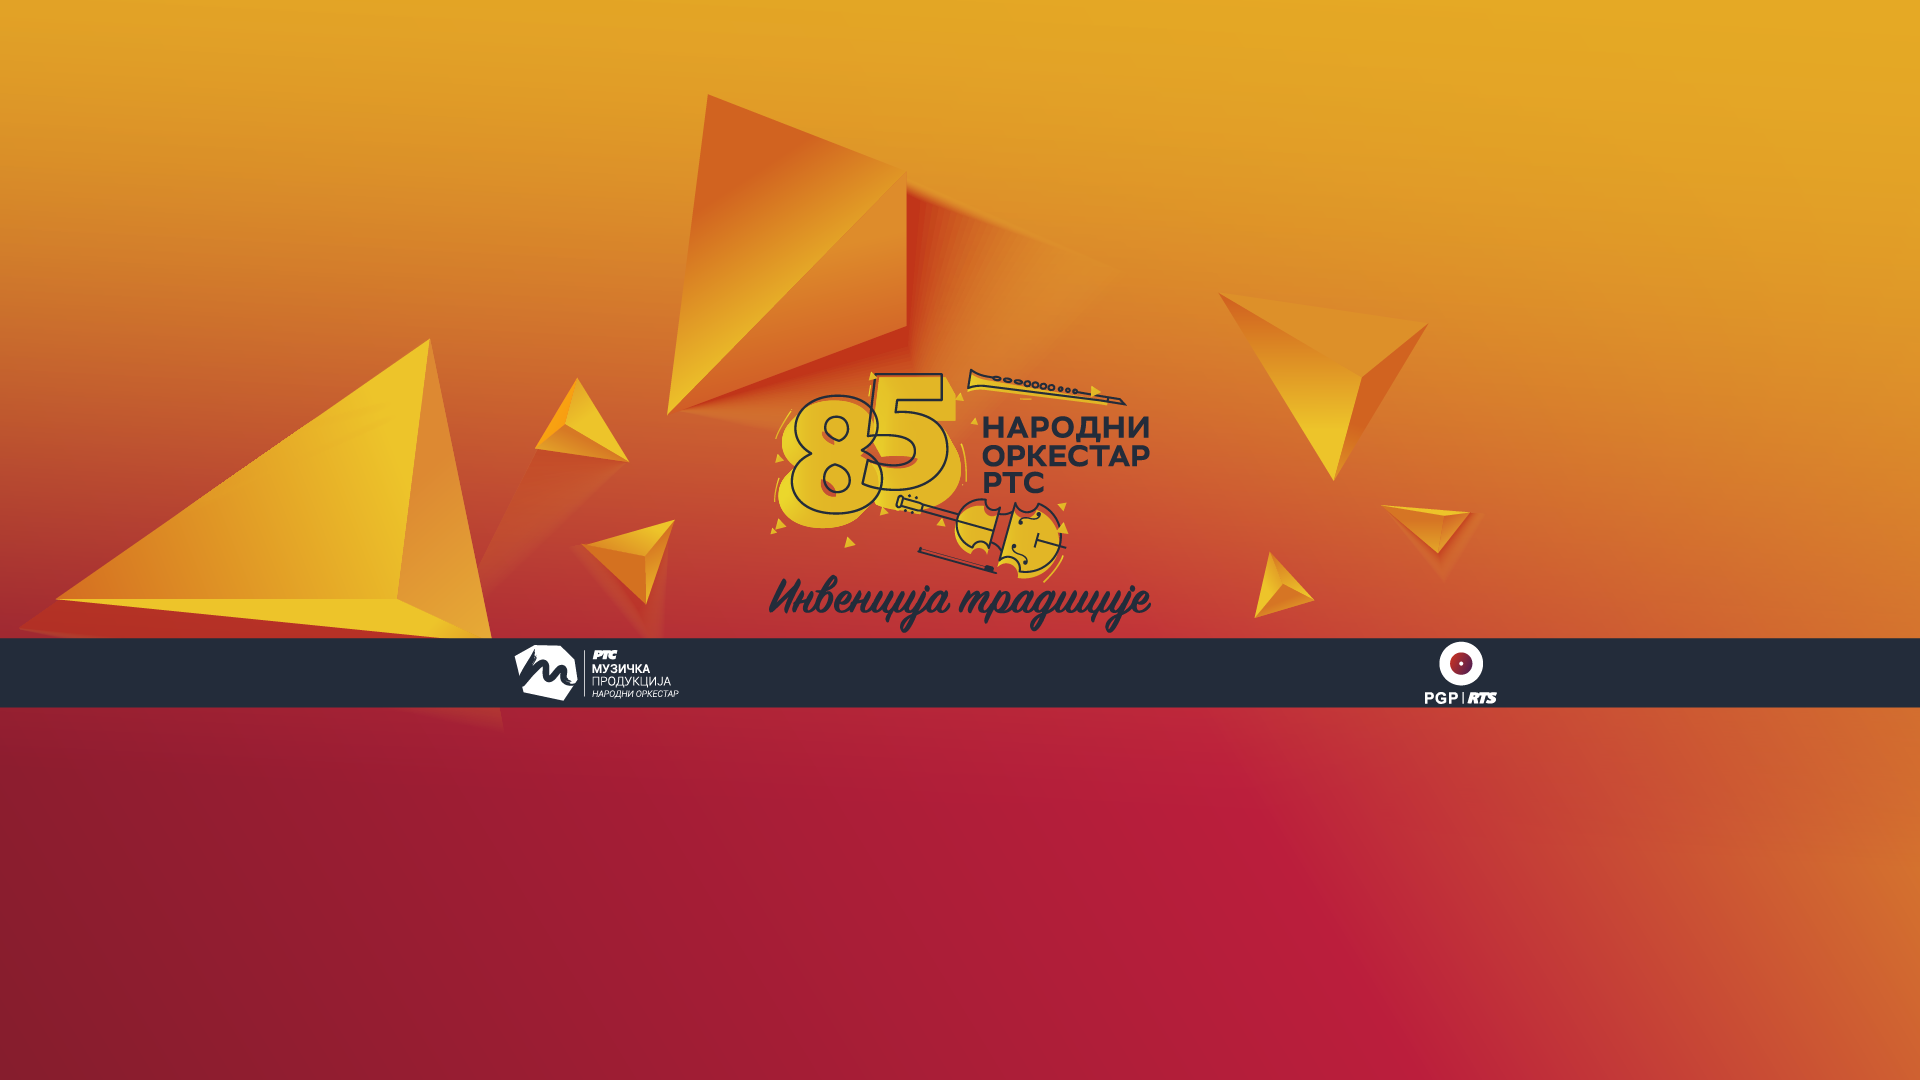 Promocija CD izdanja 85 godina Narodnog orkestra RTS „Invencija tradicije“